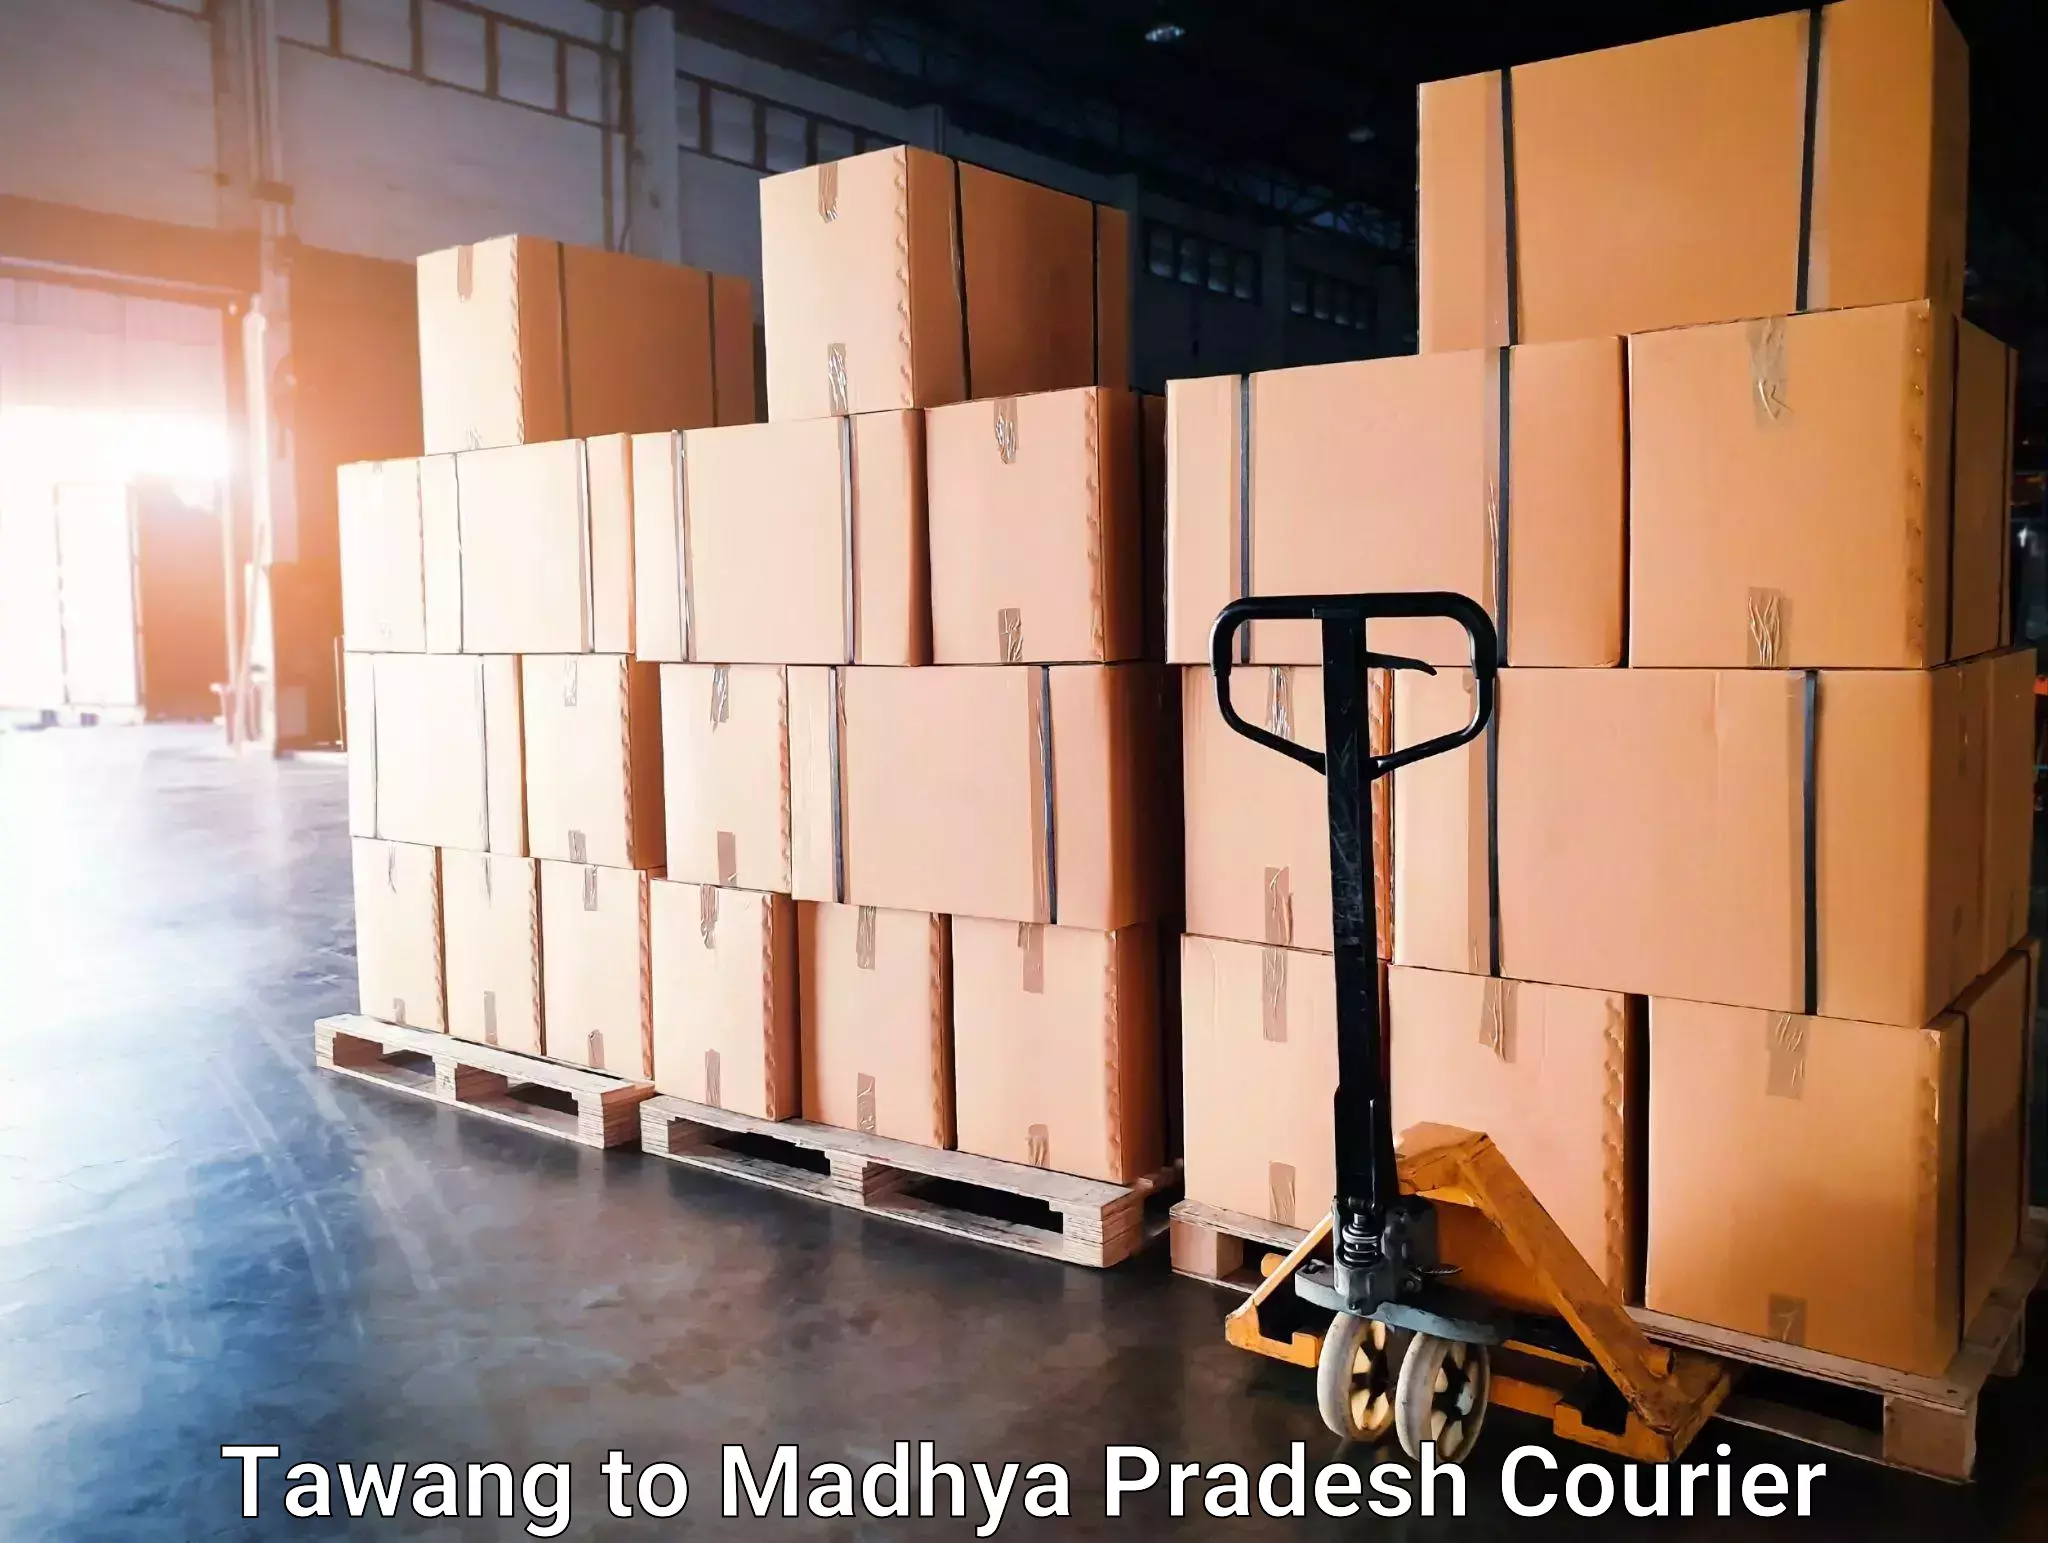 High-capacity parcel service Tawang to Madhya Pradesh